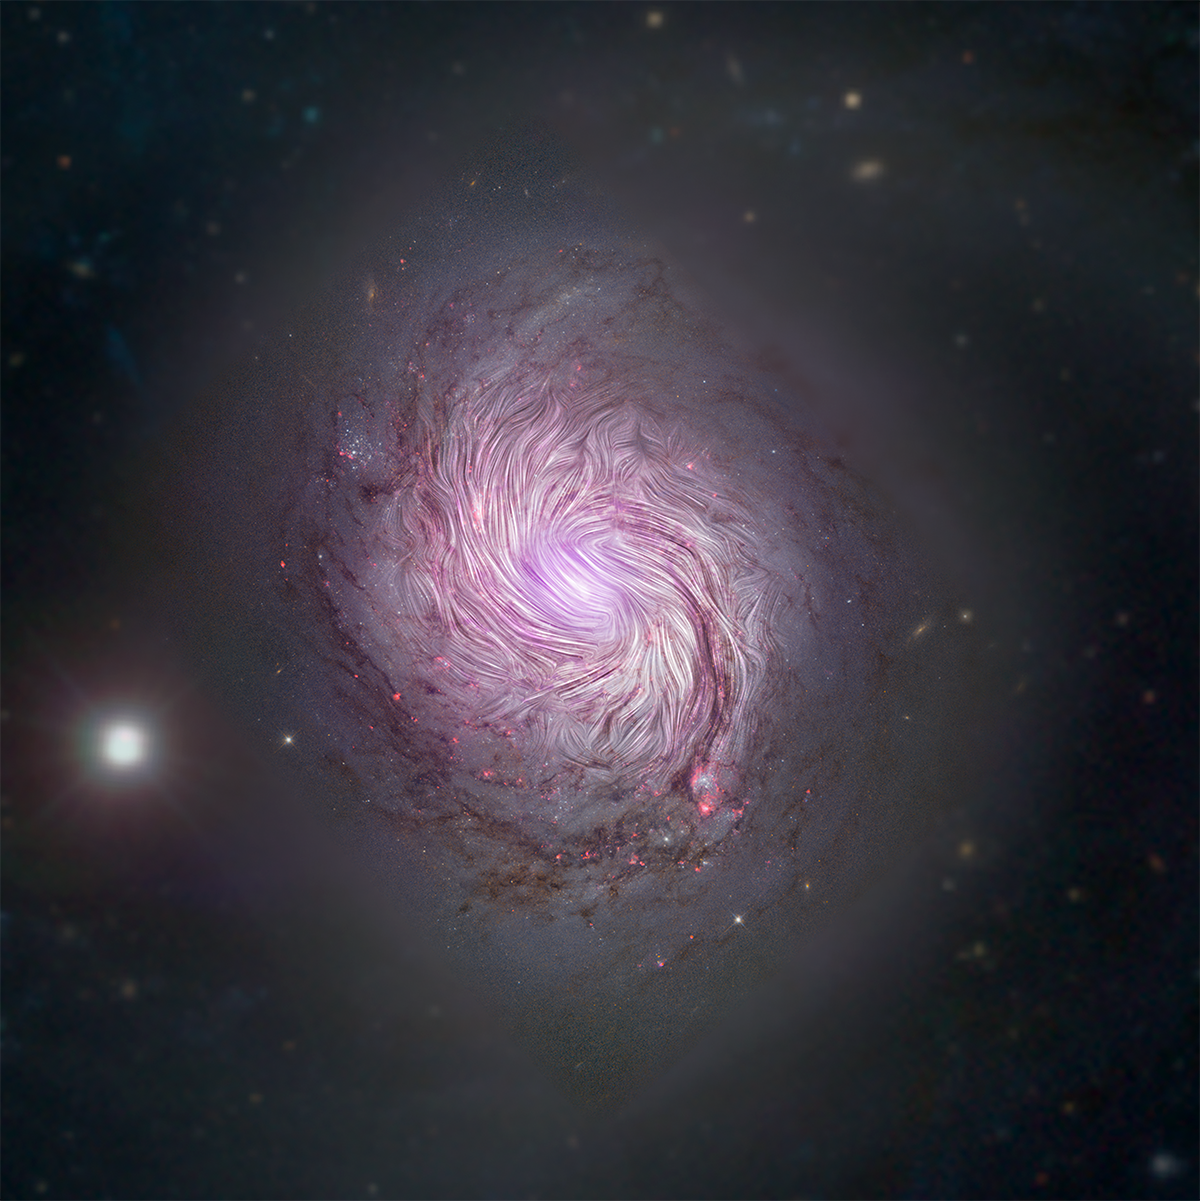 Magnetische velden spelen belangrijke rol bij vorming spiraalarmen sterrenstelsels